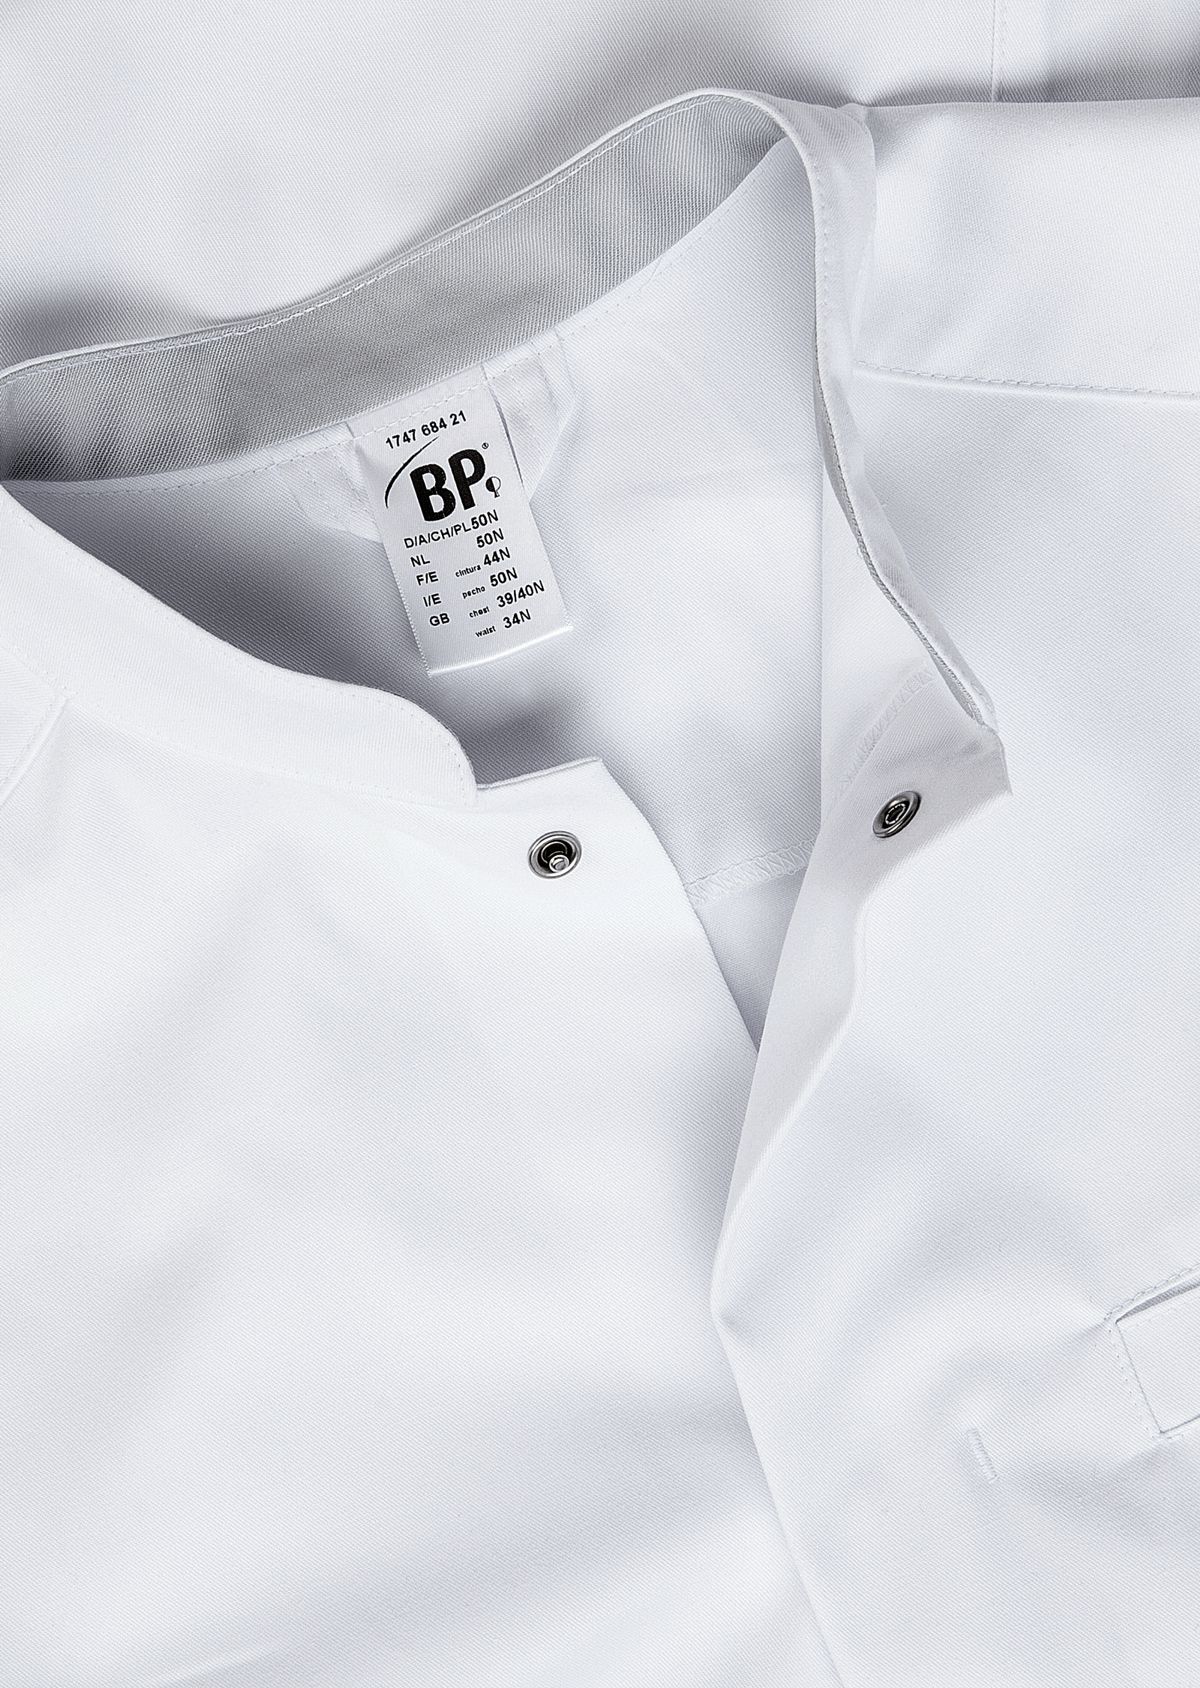 BP® Stretch men's doctor's coat